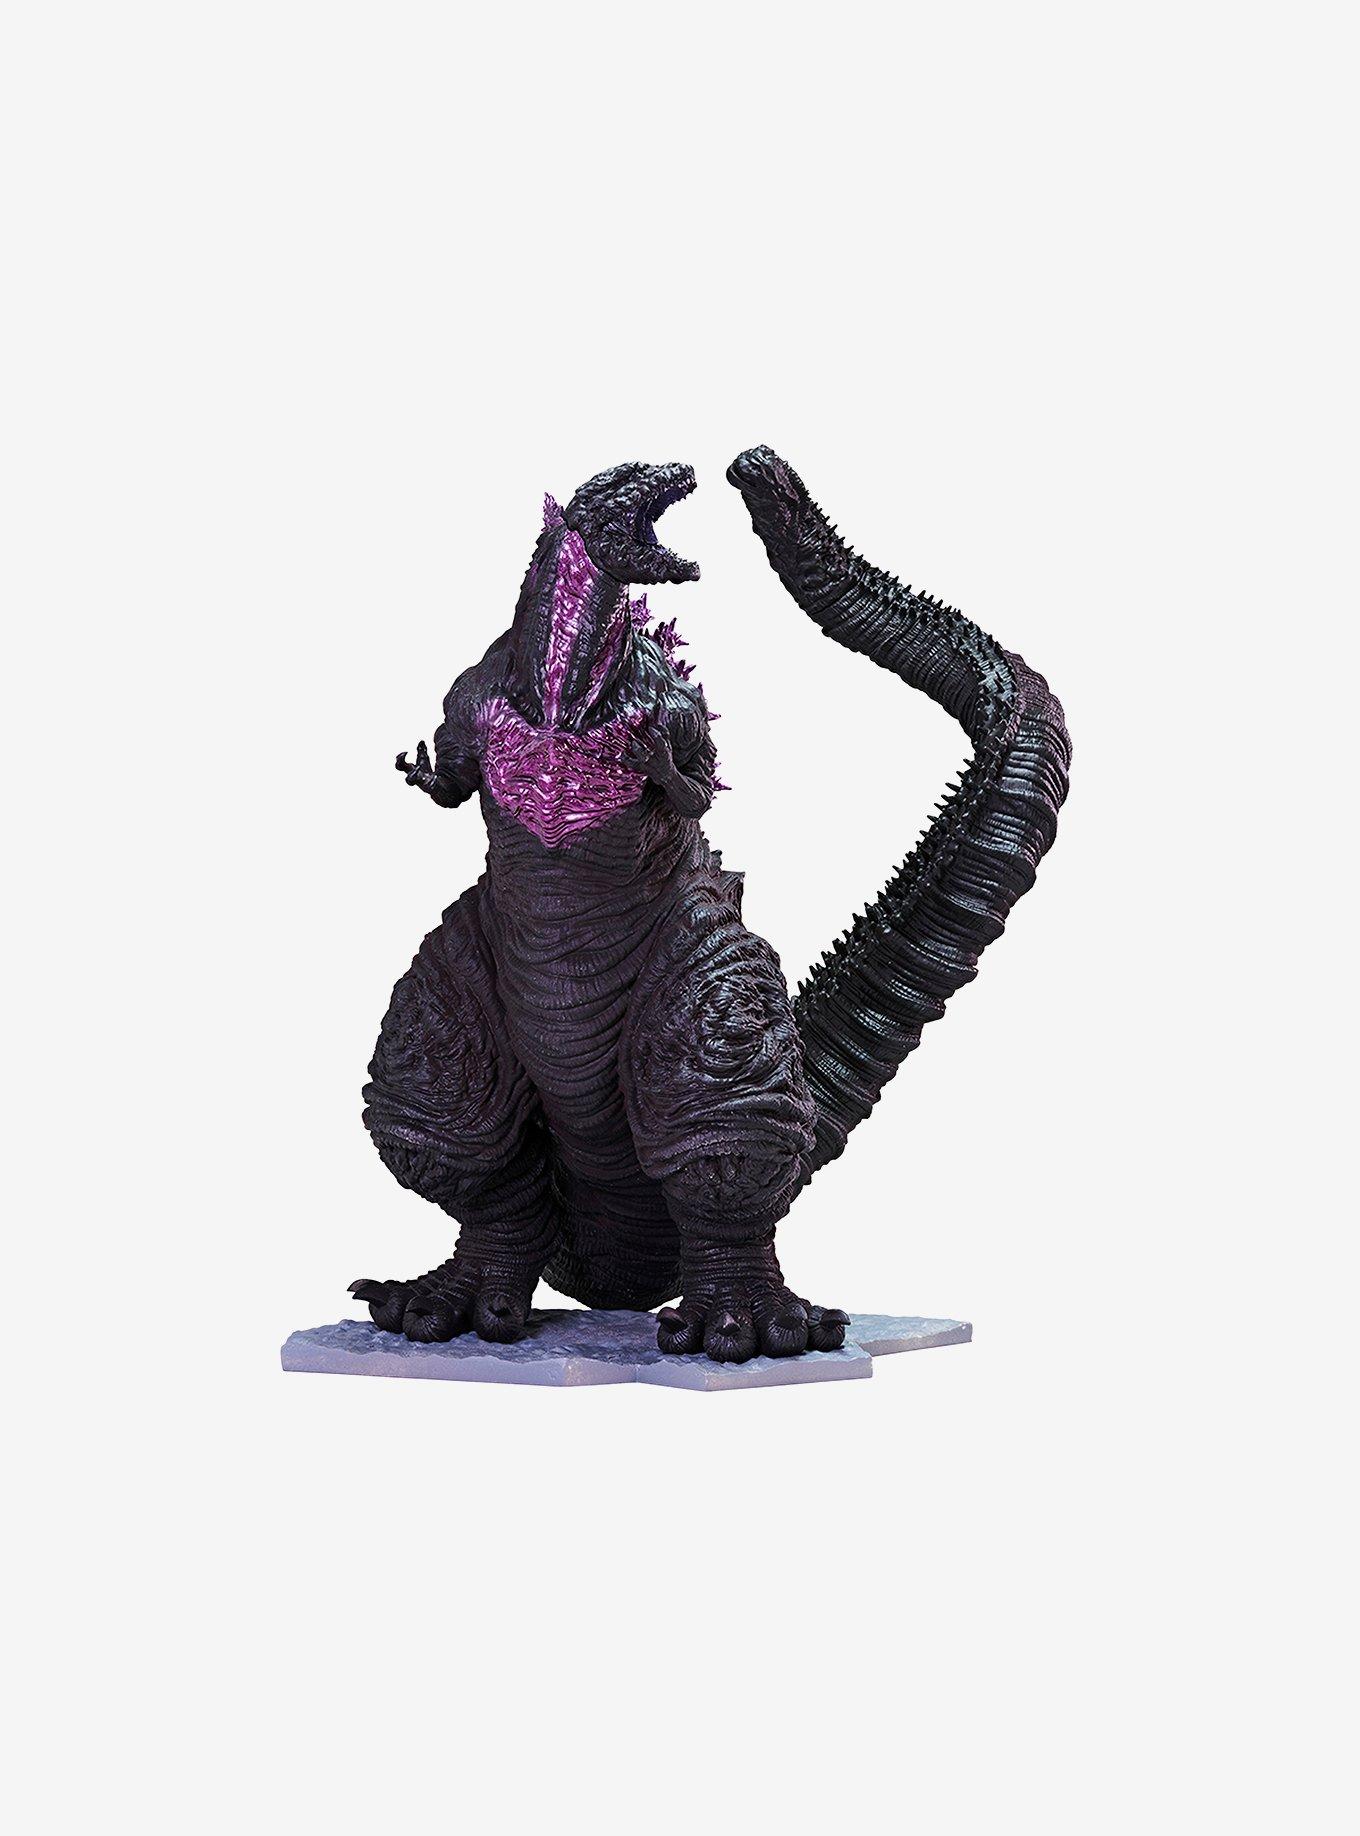  Big Godzilla Toy Singular Point 19'' Head-to-Tail